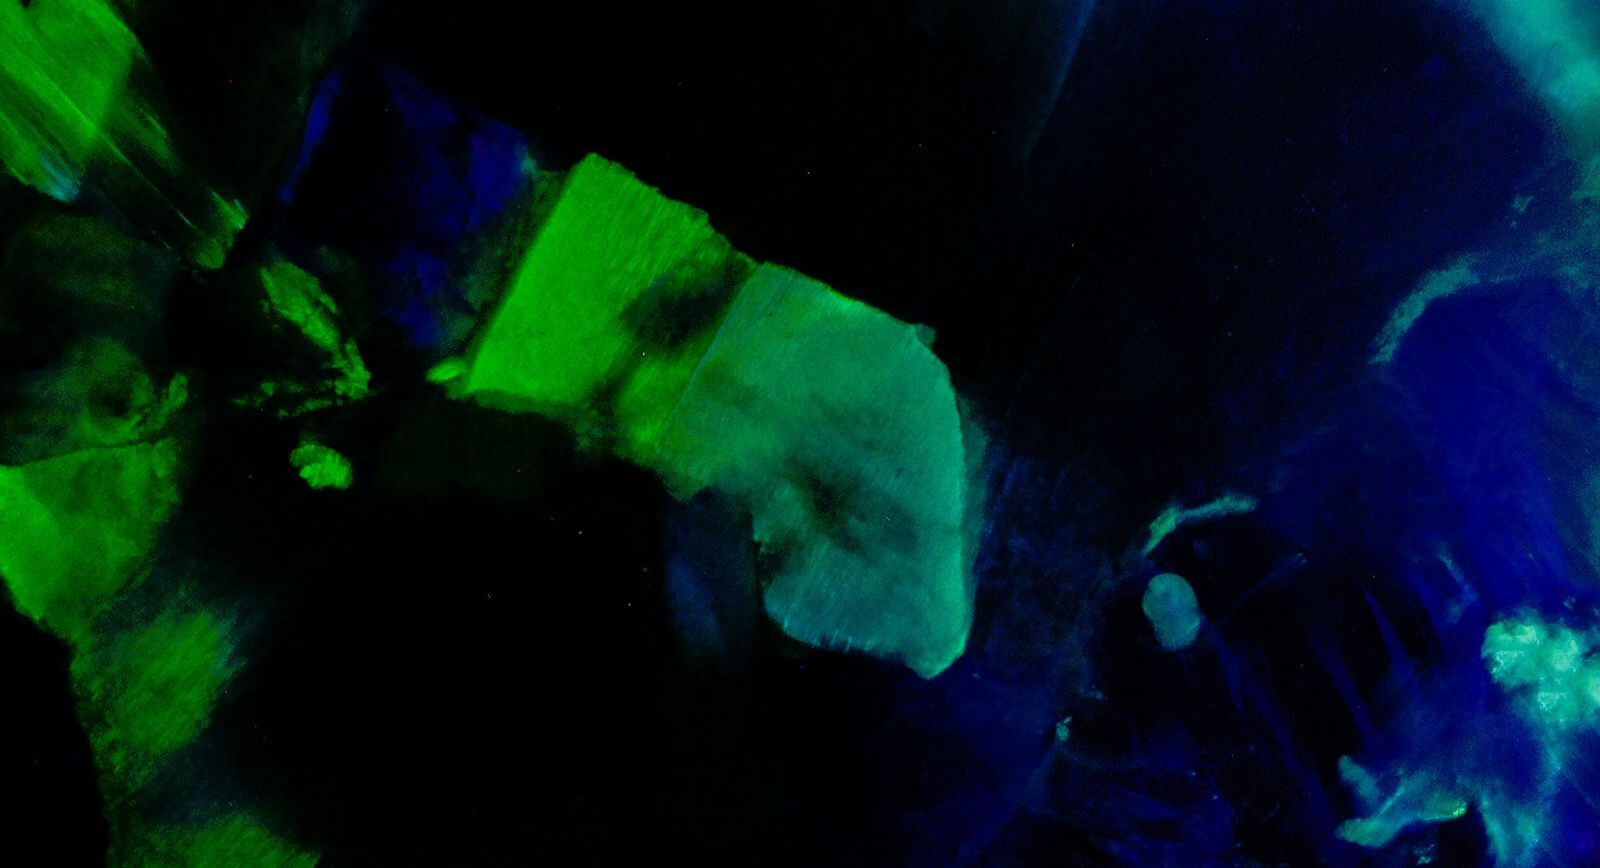 Вспышки зеленого цвета в австралийском черном опале от IMAGEM